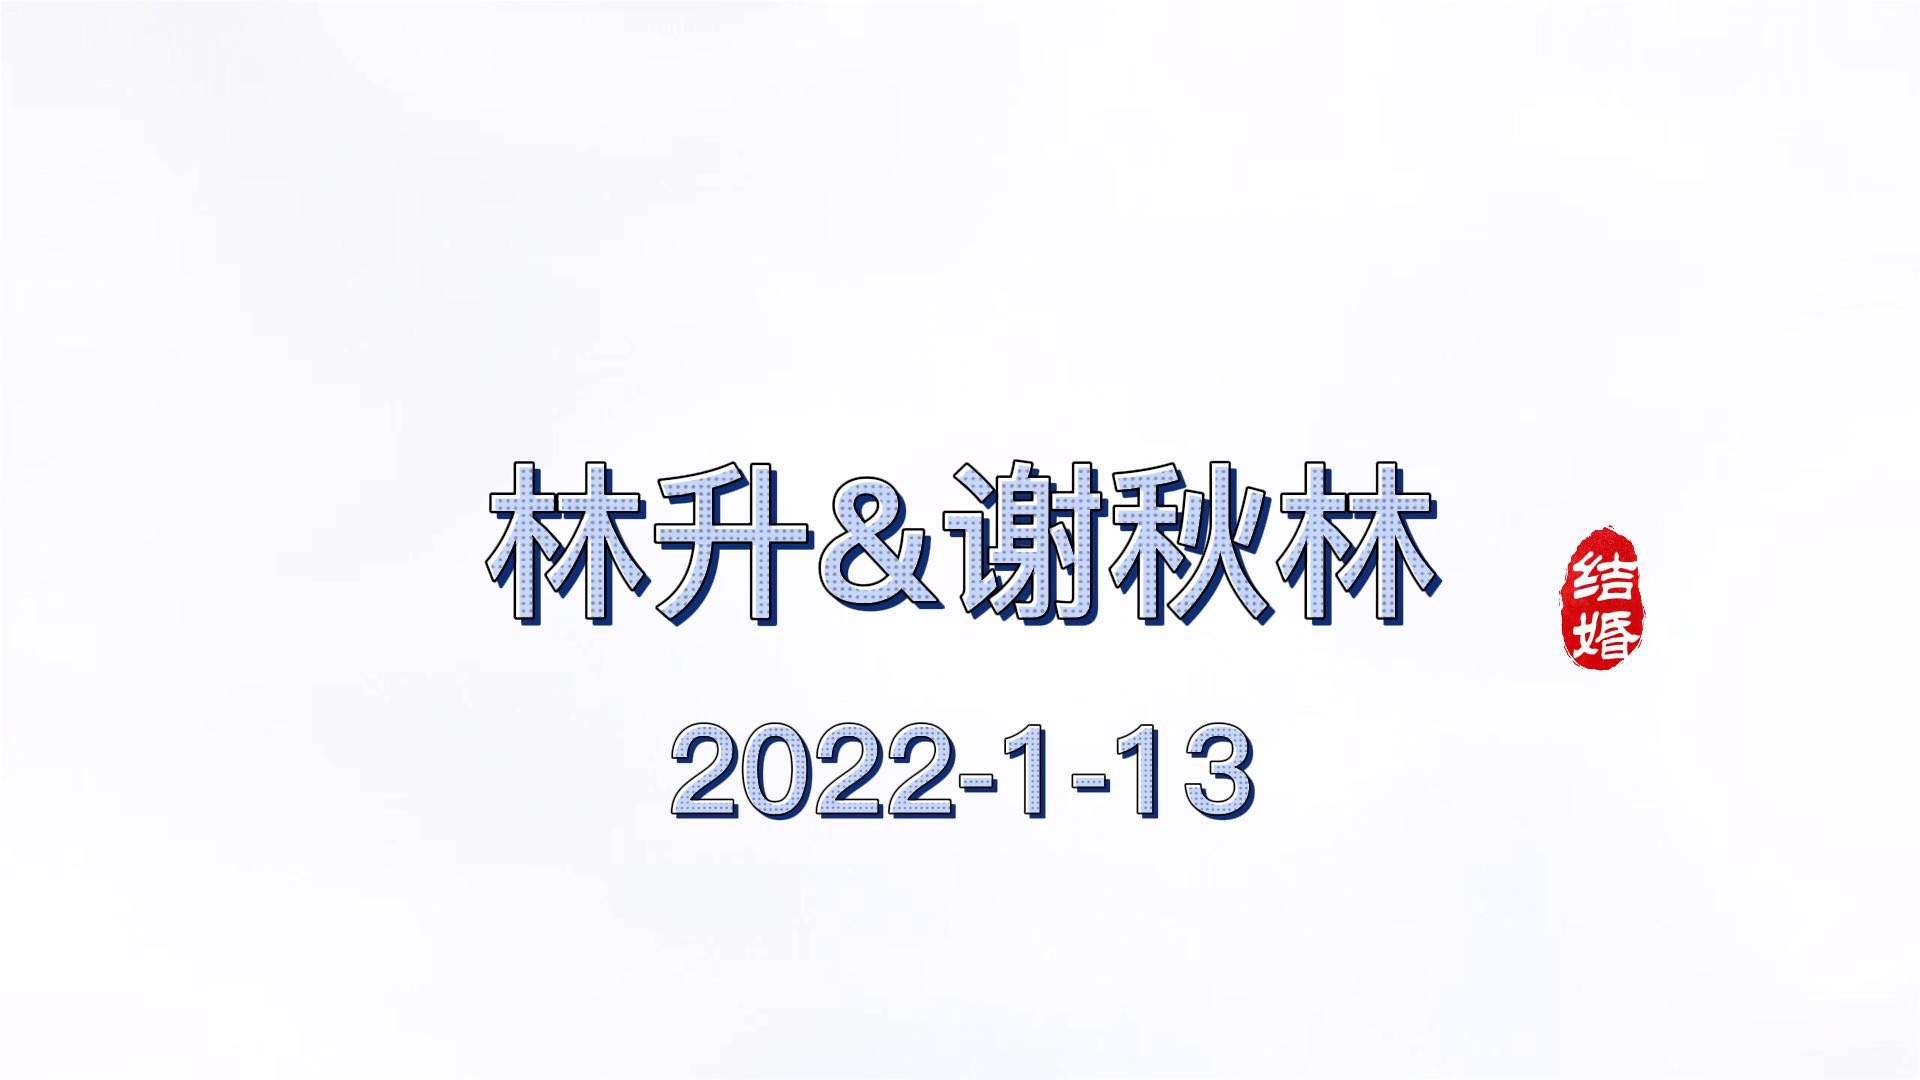 林升&谢秋林2022.1.13婚礼mv